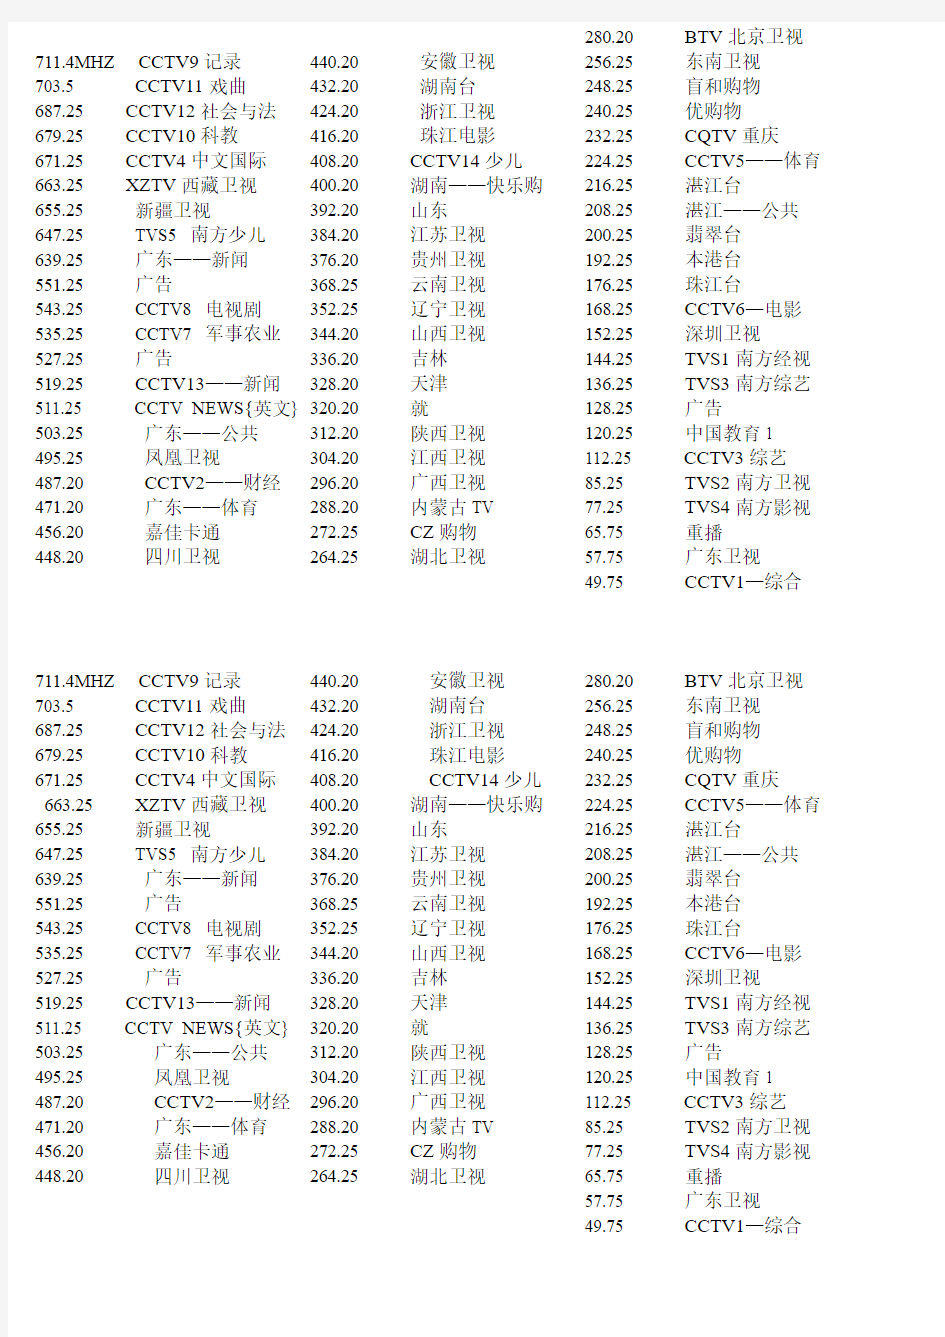 中国各电视台频率与频道对照表